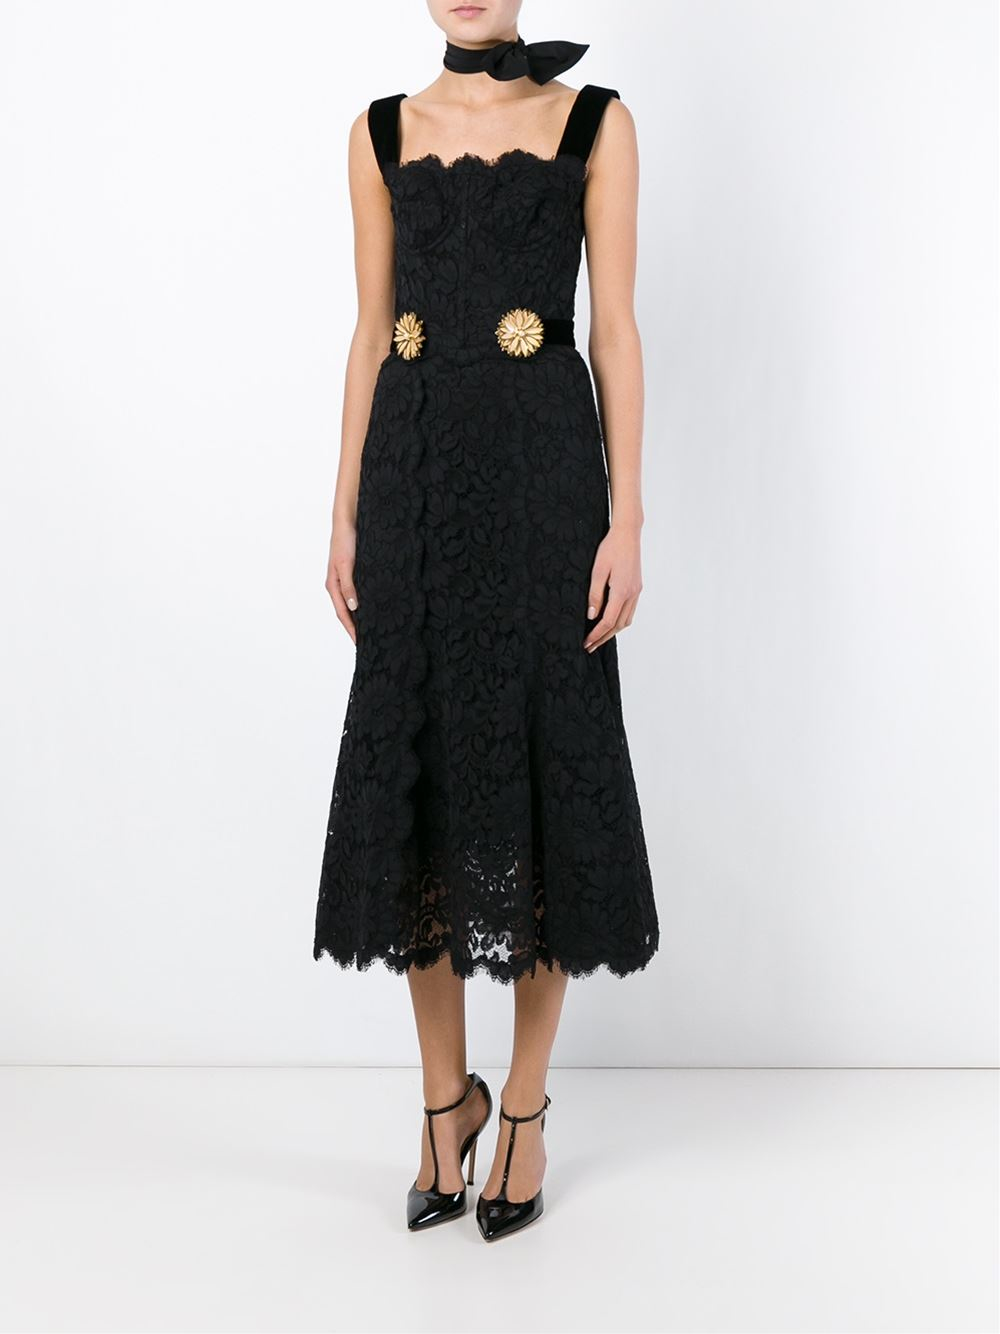 Dolce & Gabbana Flower Detail Lace Dress in Black - Lyst